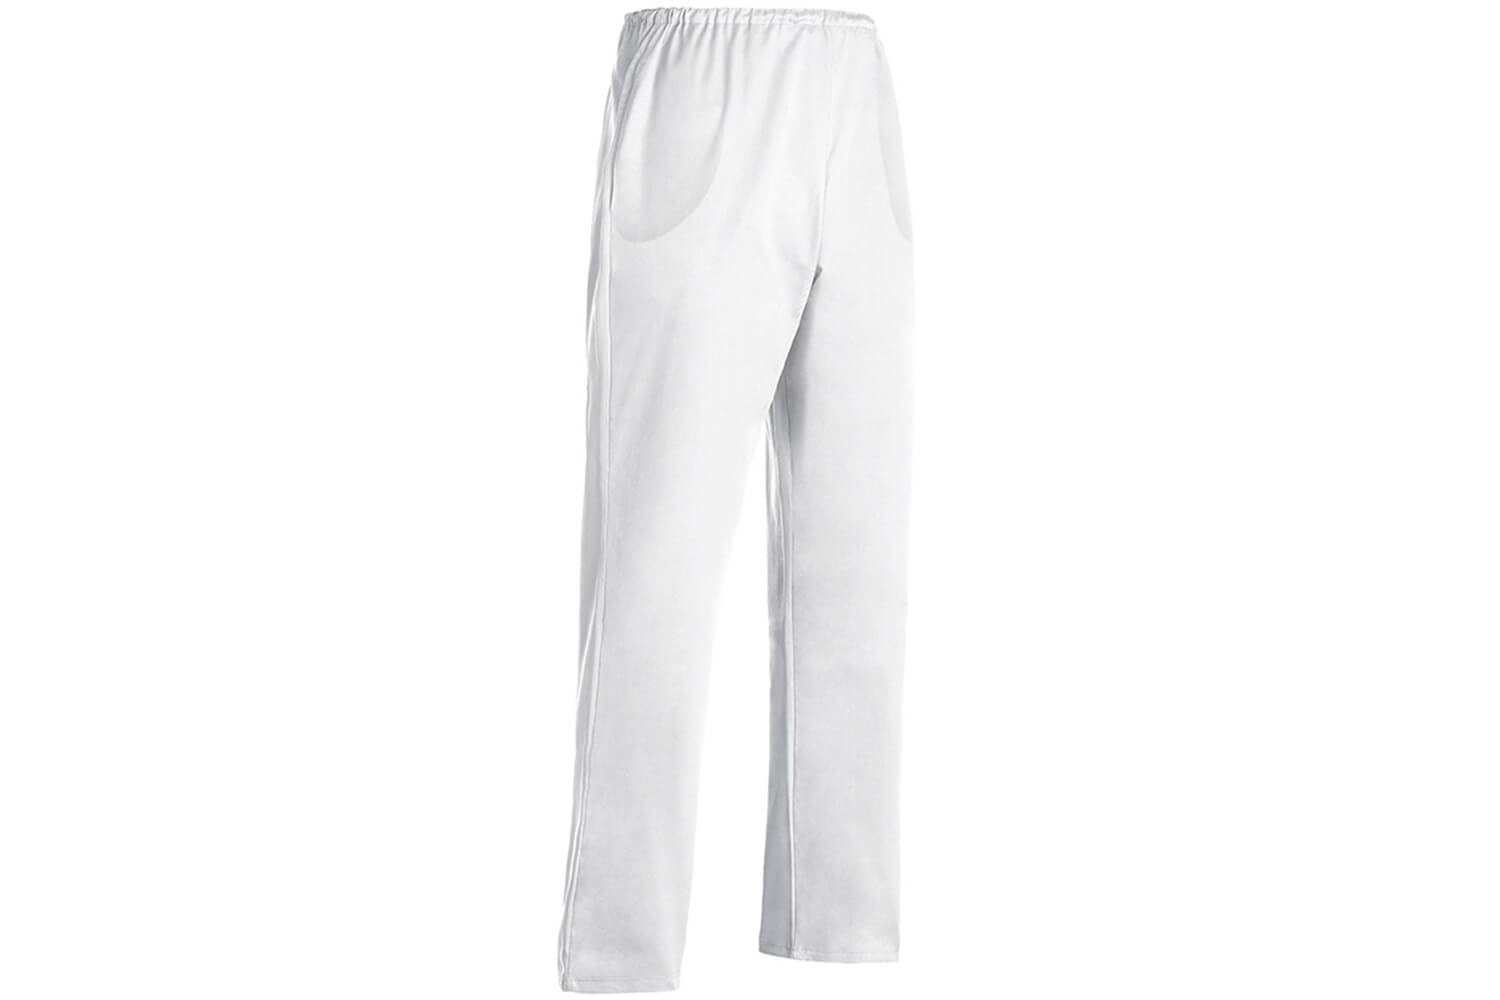 Pantalon de cuisine blanc, Large gamme pantalons cuisine